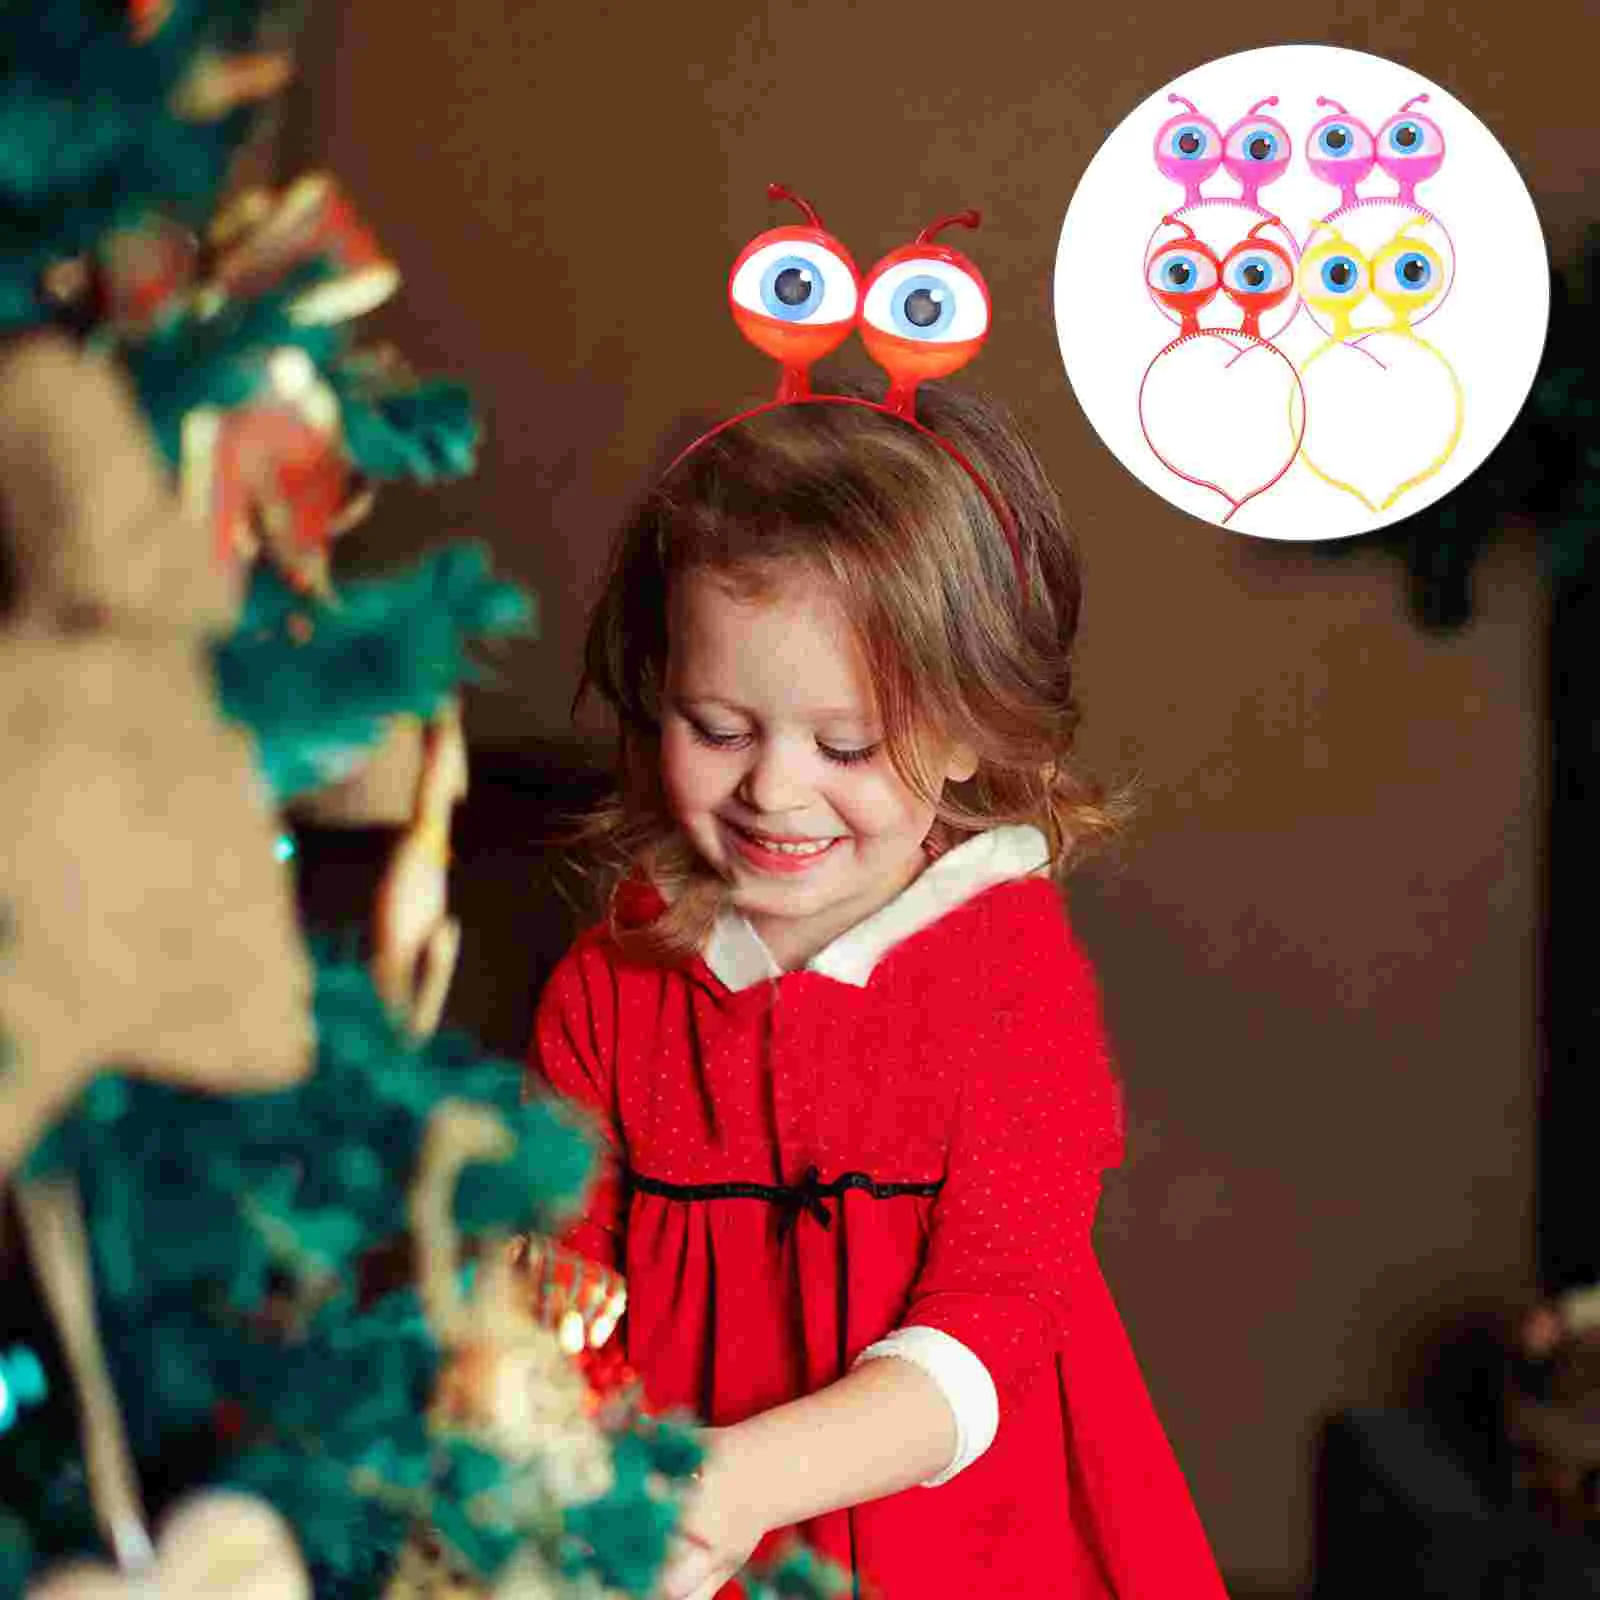 

4 шт. светодиодная мигающая повязка на голову, украшения для рождественской вечеринки, детские заколки для волос с большими глазами, светящиеся повязки на голову инопланетянина для концерта